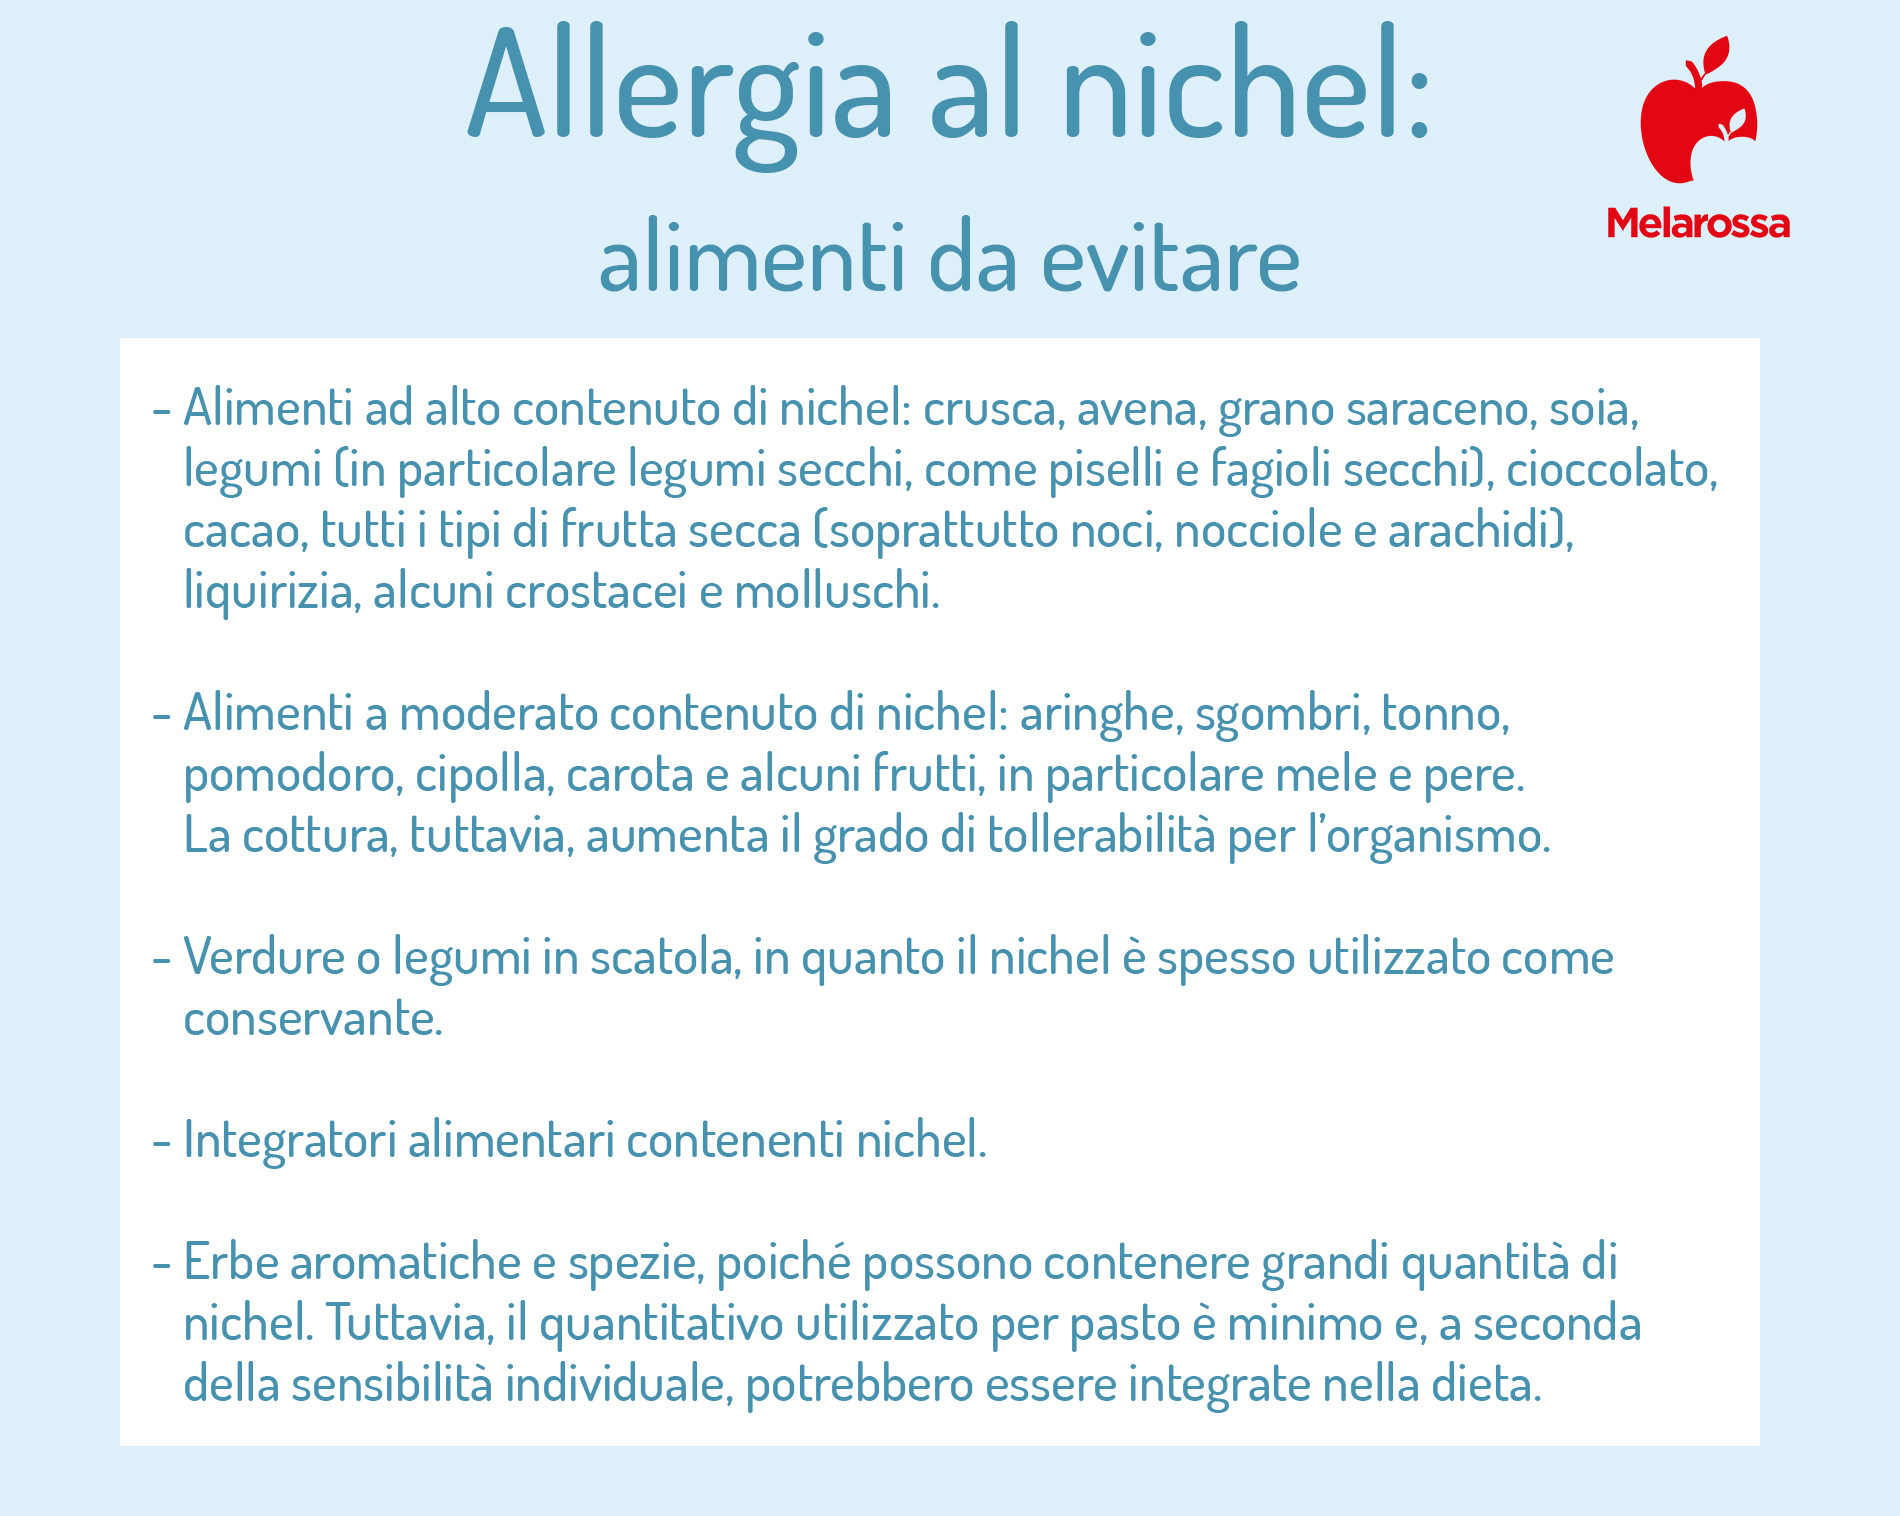 allergia al nichel e disidrosi: alimenti da evitare 